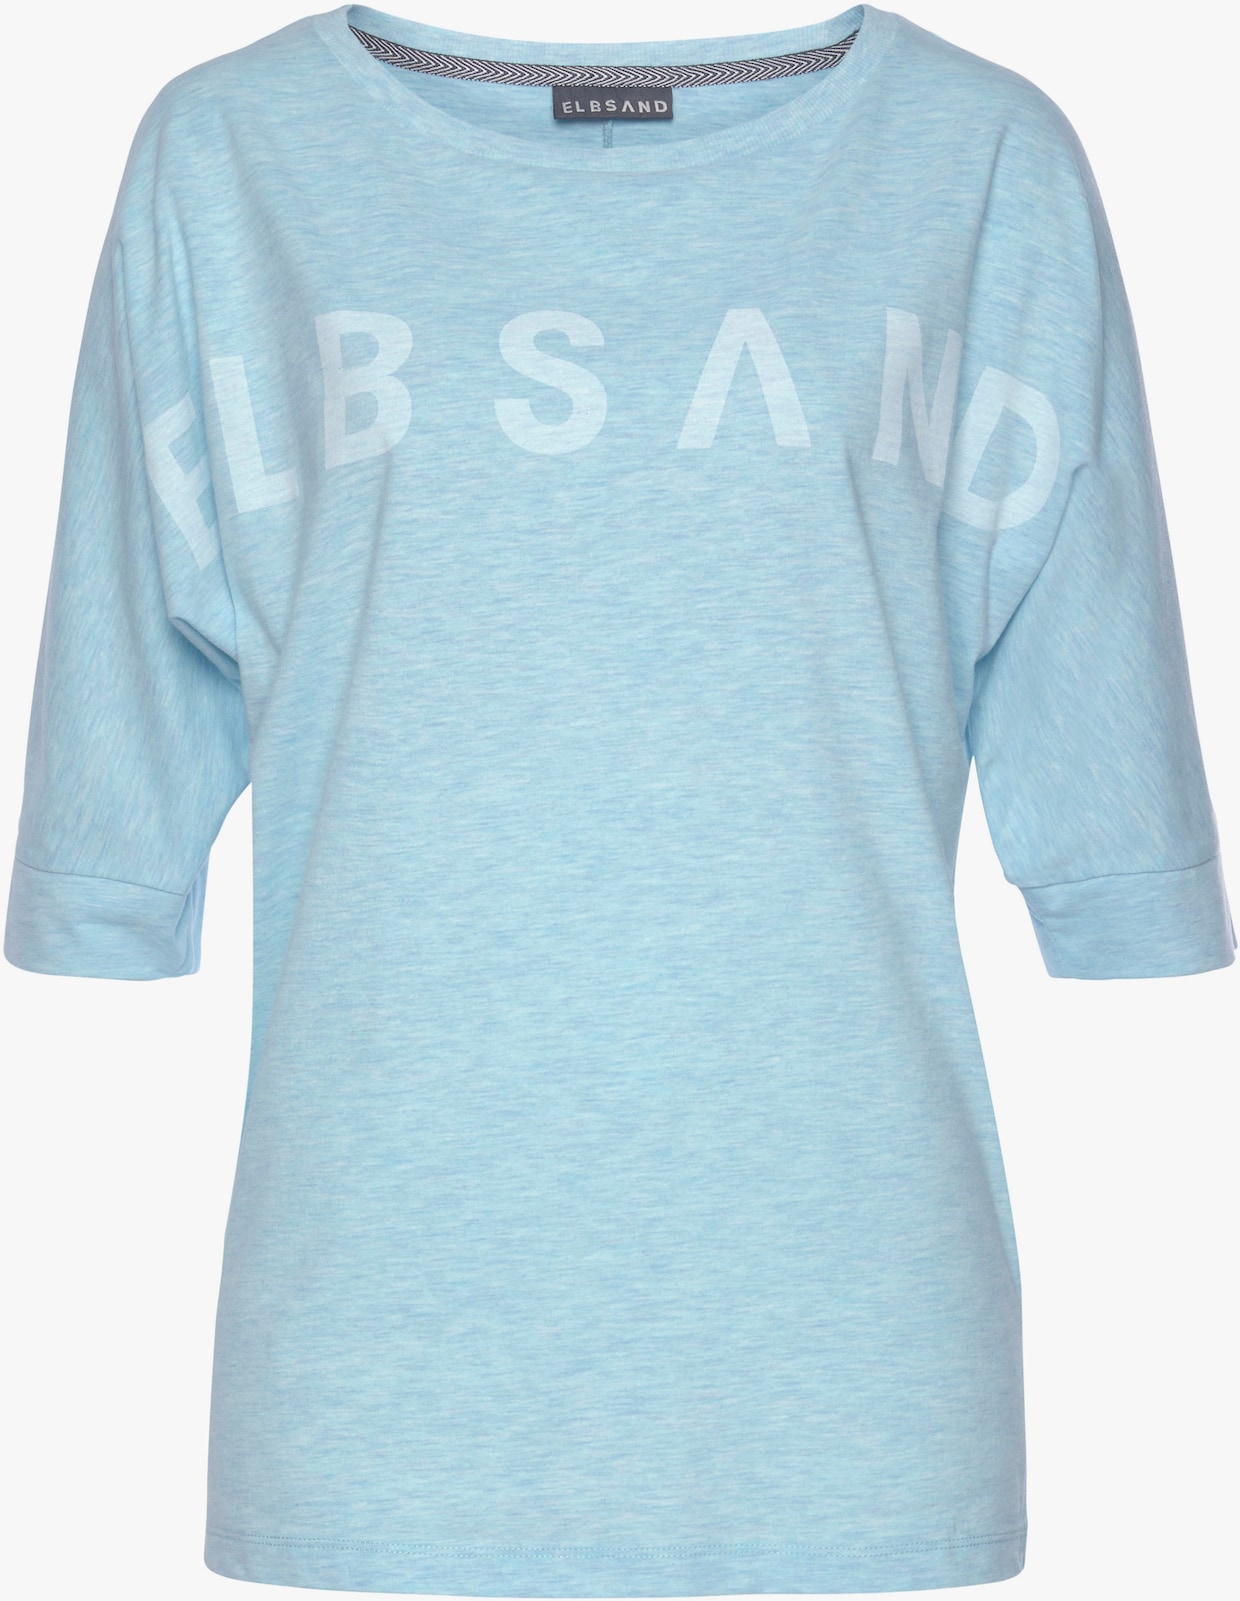 Elbsand 3/4-Arm-Shirt - hellblau